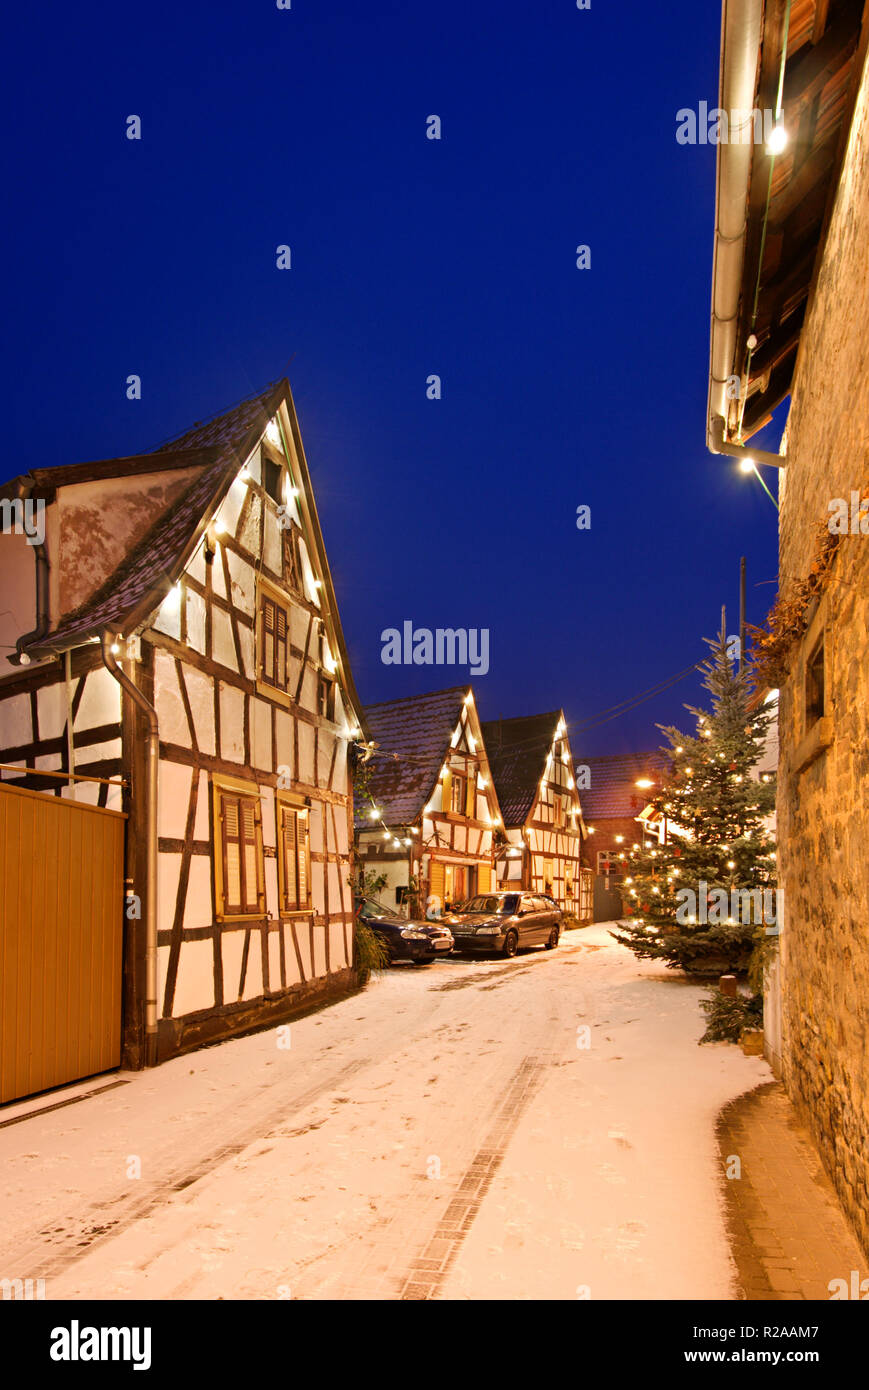 Photo de nuit de Noël une rue avec de la neige dans un petit village allemand de Lachen, Neustadt an der Weinstrasse, Allemagne. Banque D'Images